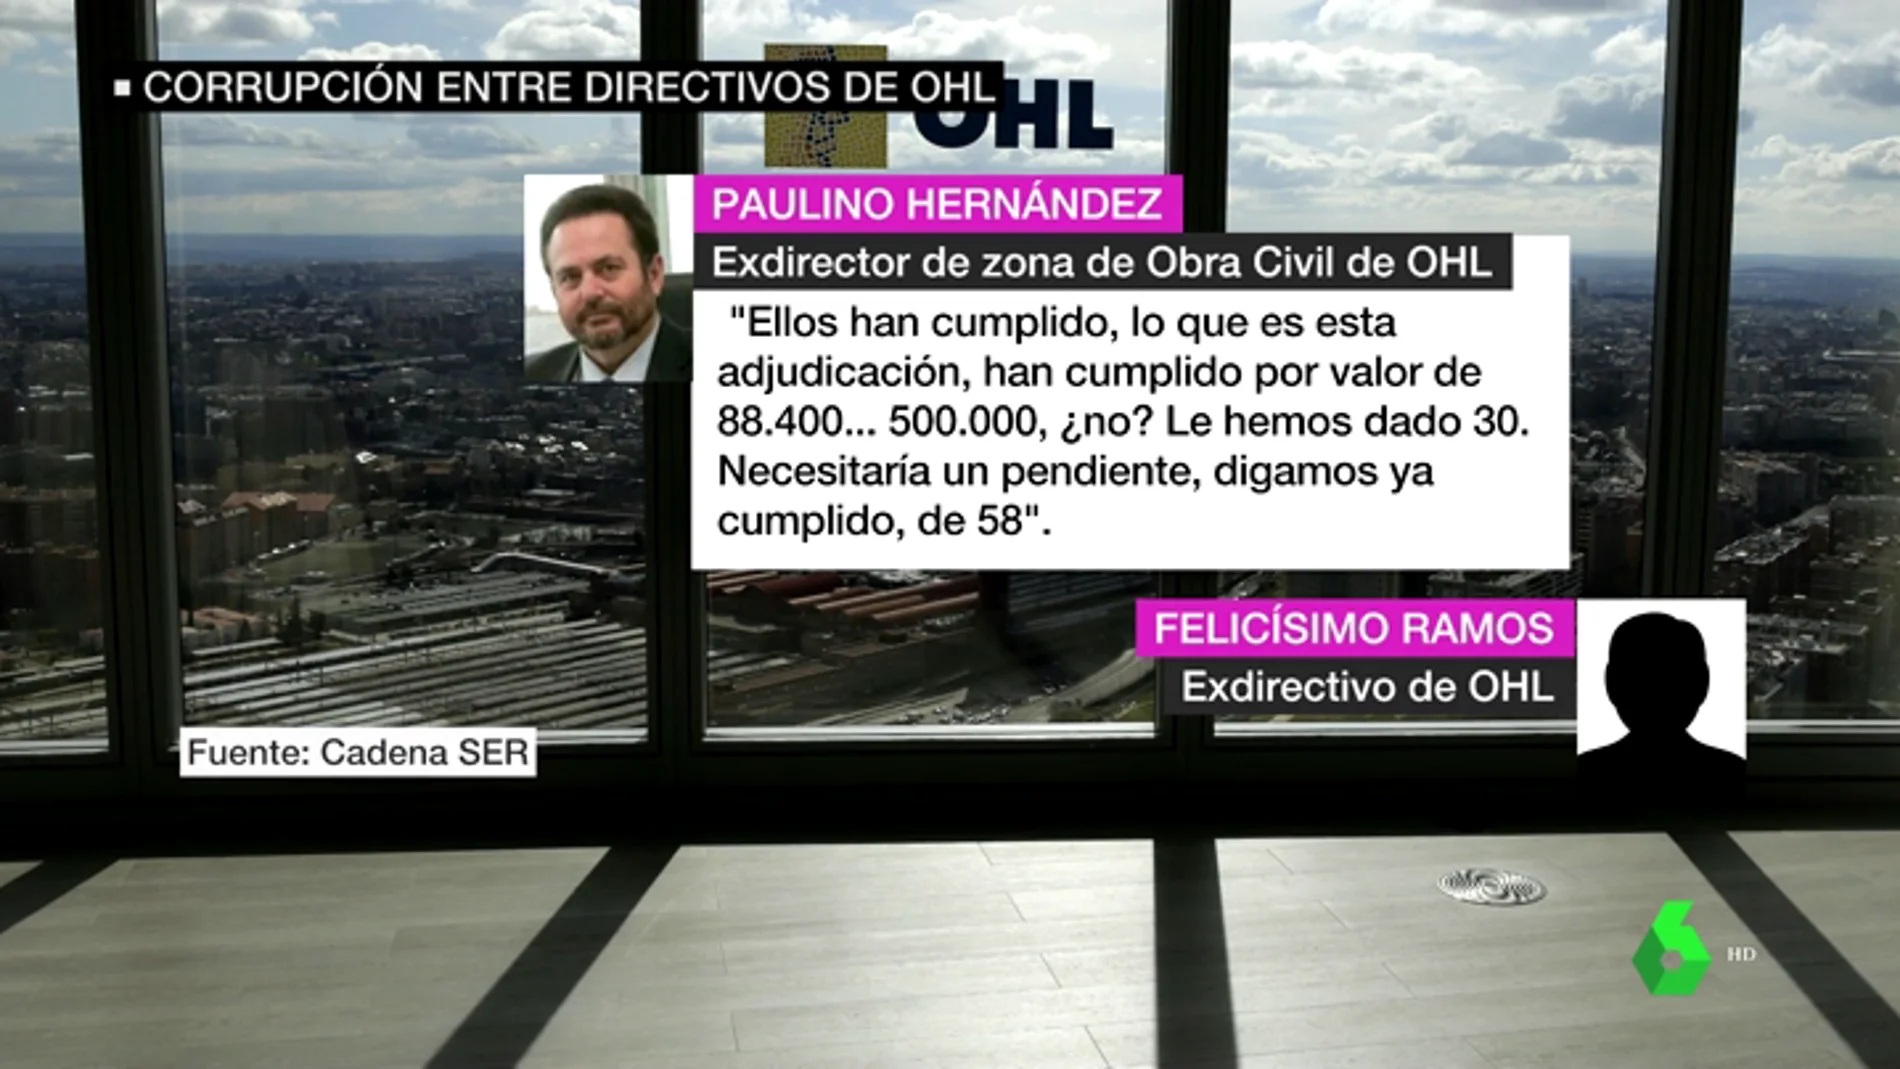 VÍDEO REEMPLAZO | Las grabaciones que prueban los sobornos de OHL a altos cargos y políticos de toda España